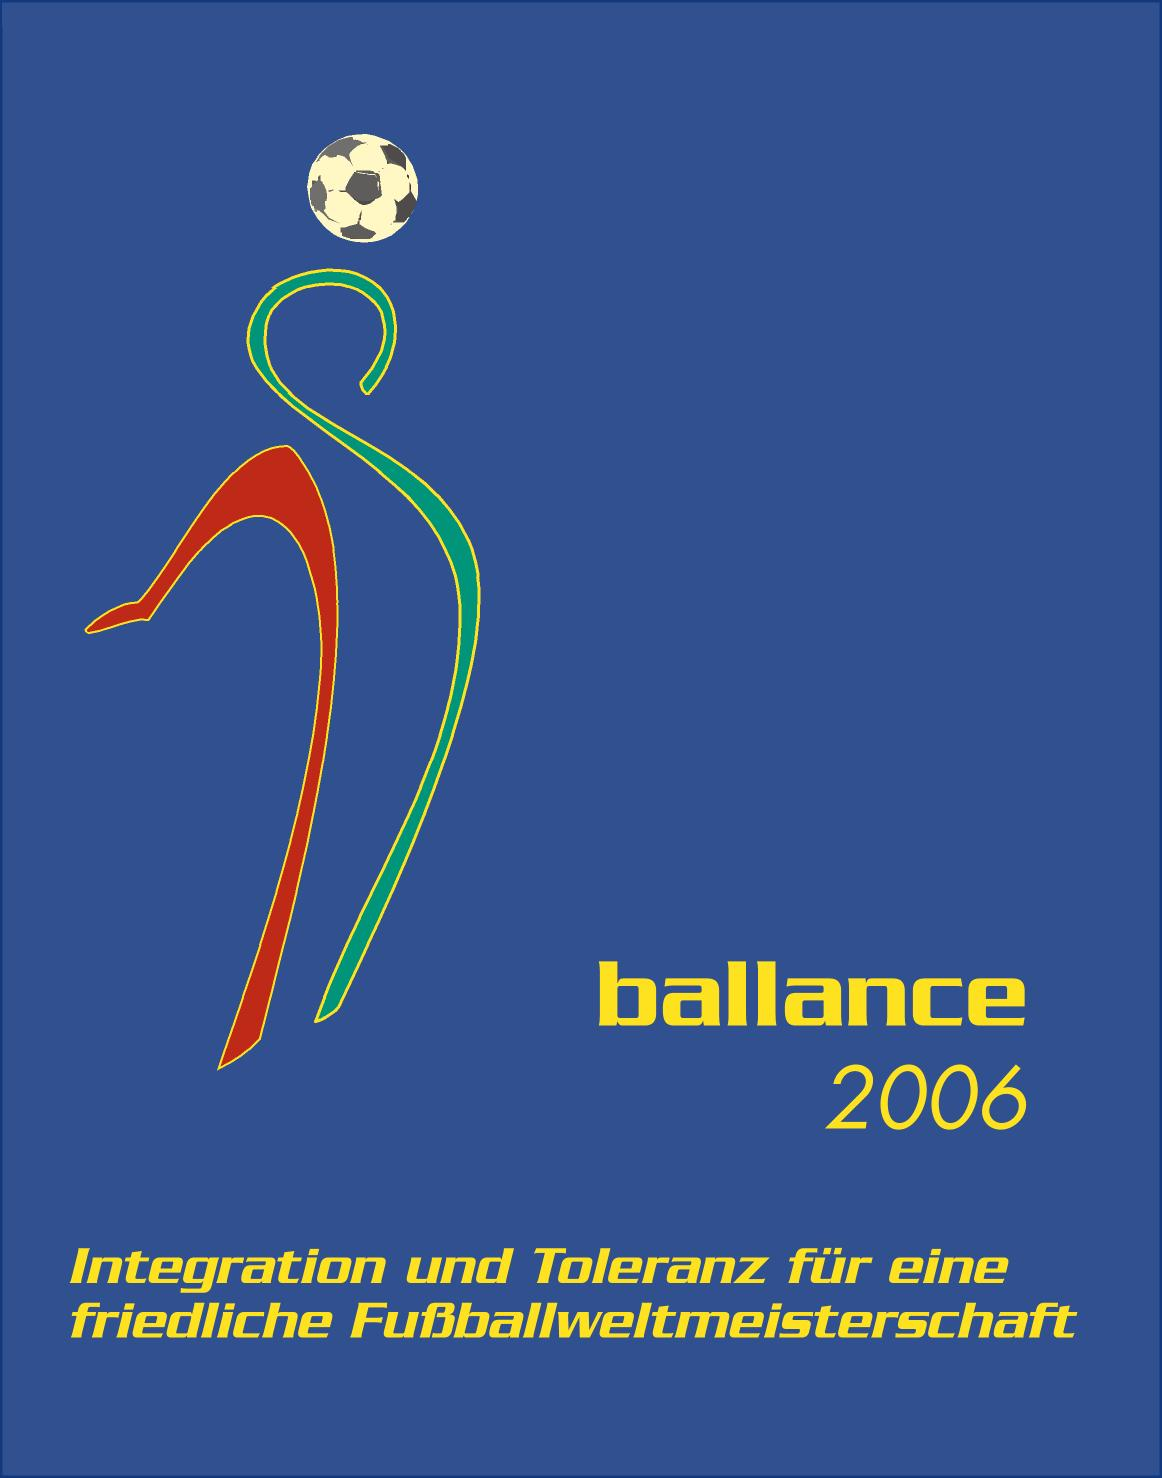 ballance 2006